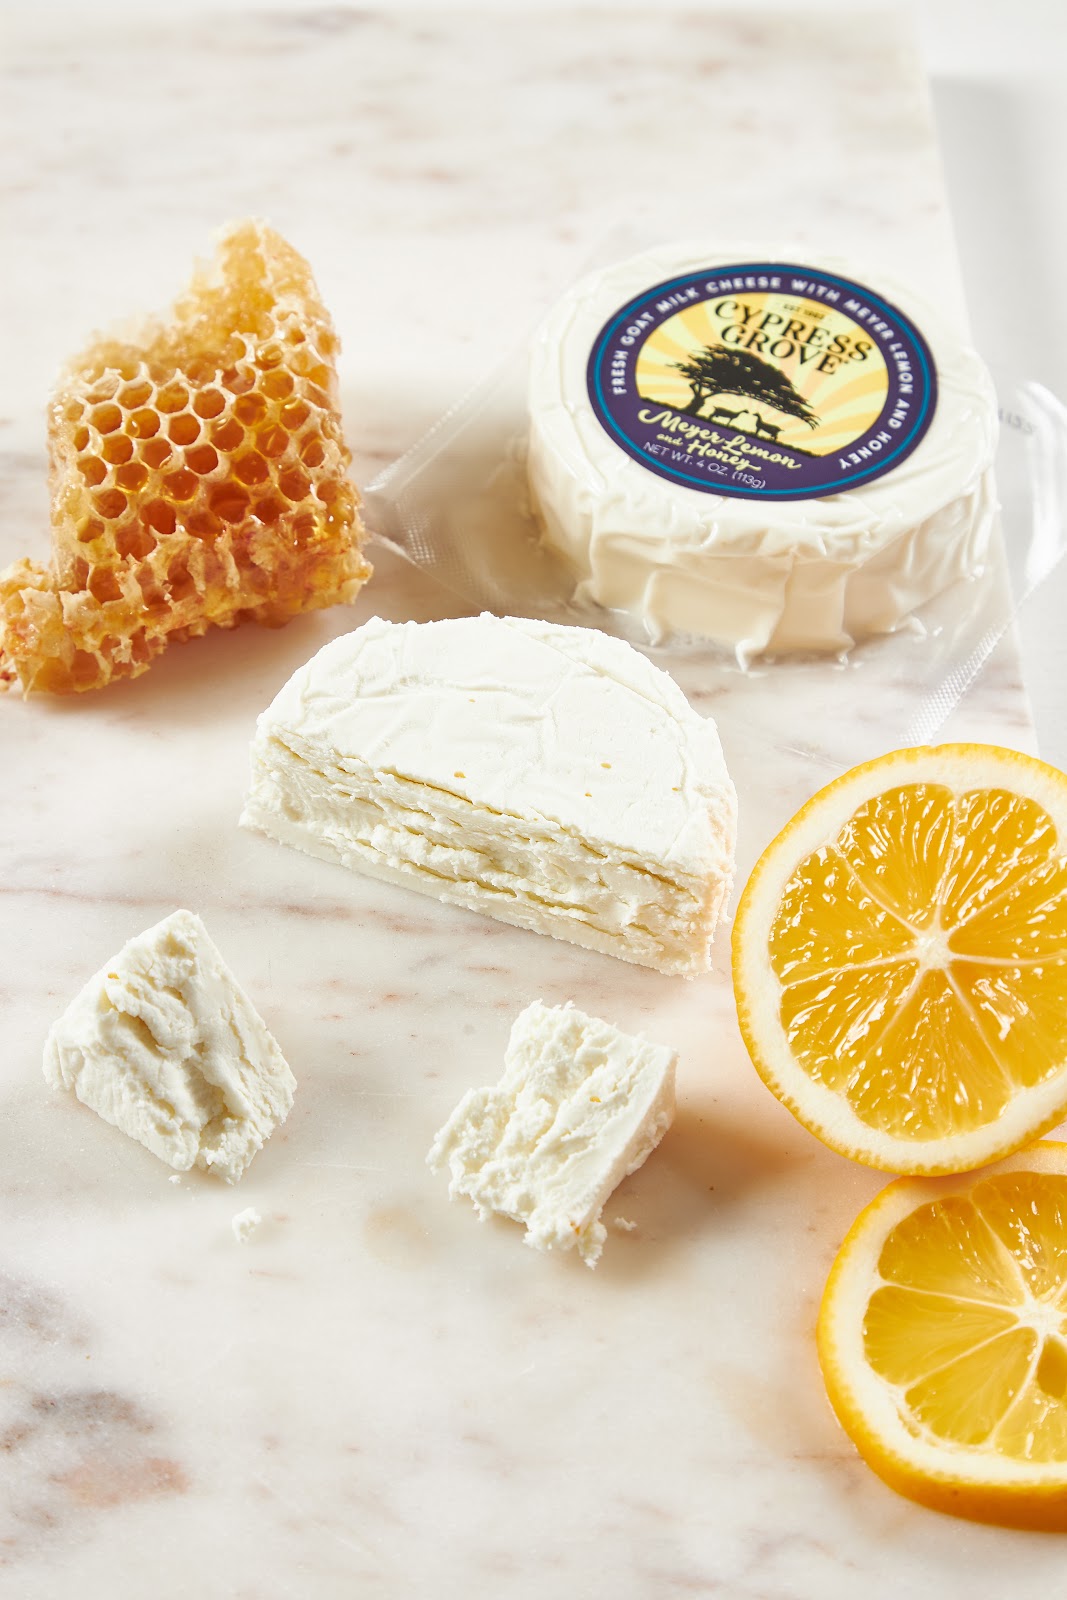 Cypress Grove Awarded Prestigious sofi™ Gold for Meyer Lemon and Honey Goat Cheese